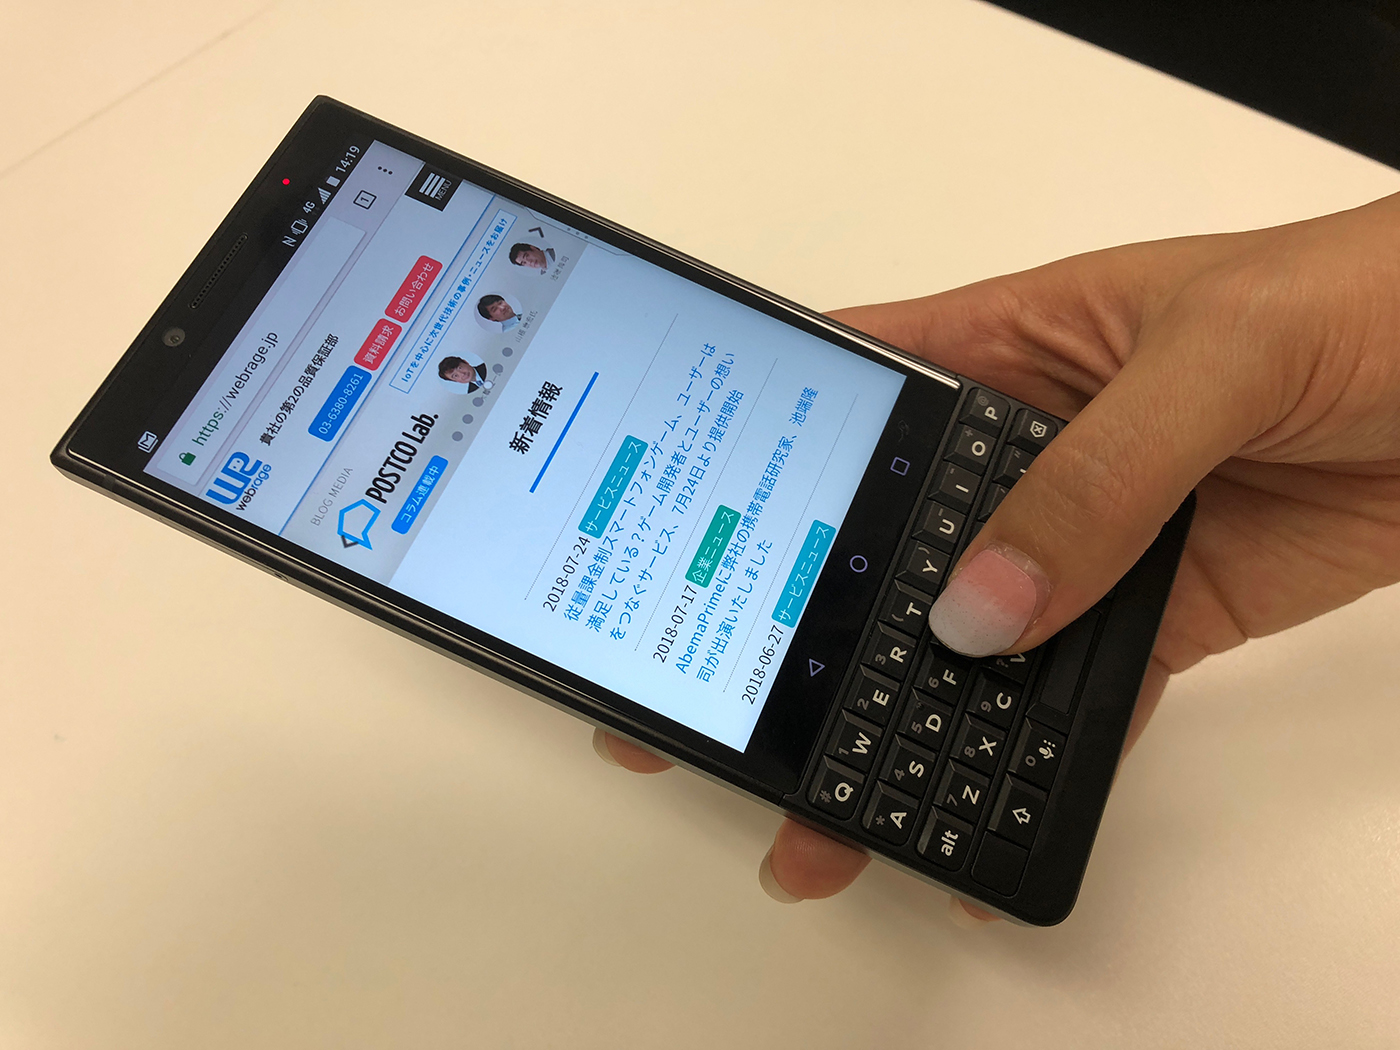 スマートフォン端末「BlackBerry KEY2」に関する記事を掲載いたしました